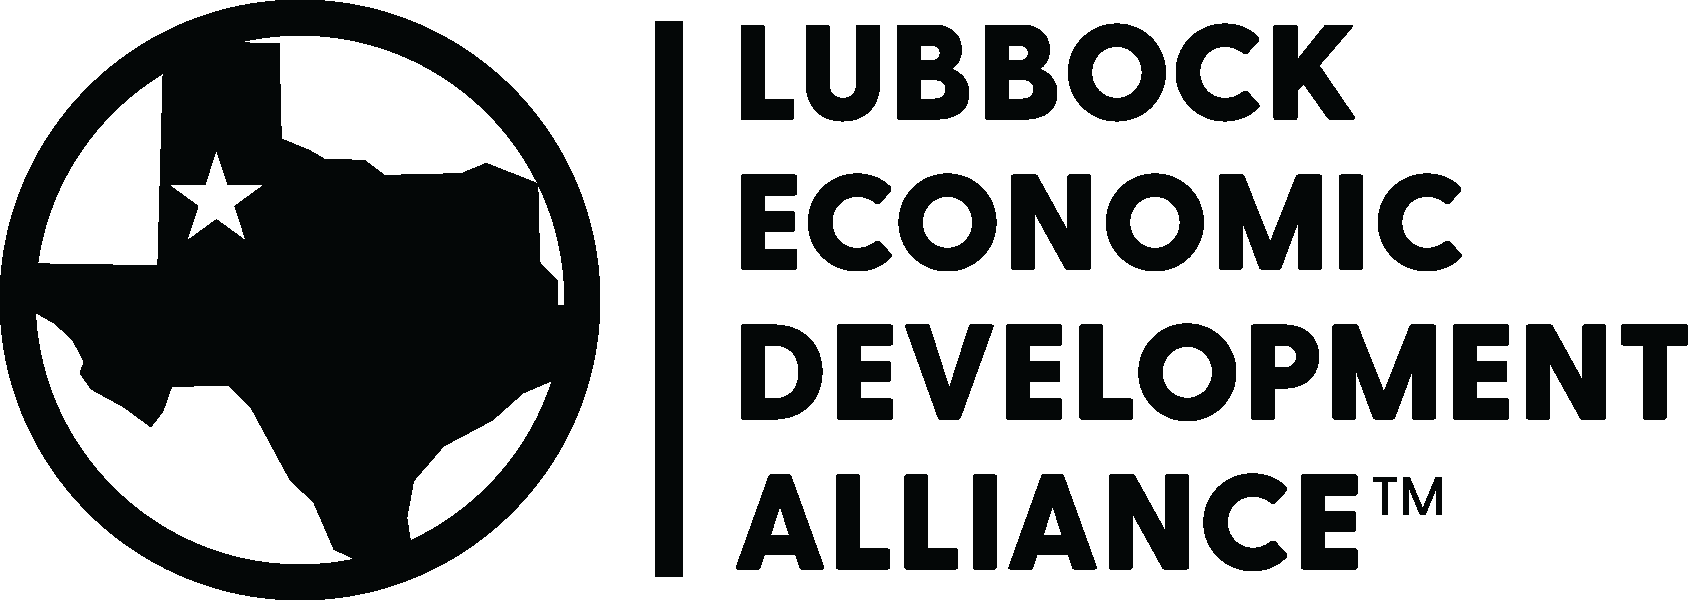 Lubbock Economic Development Alliance